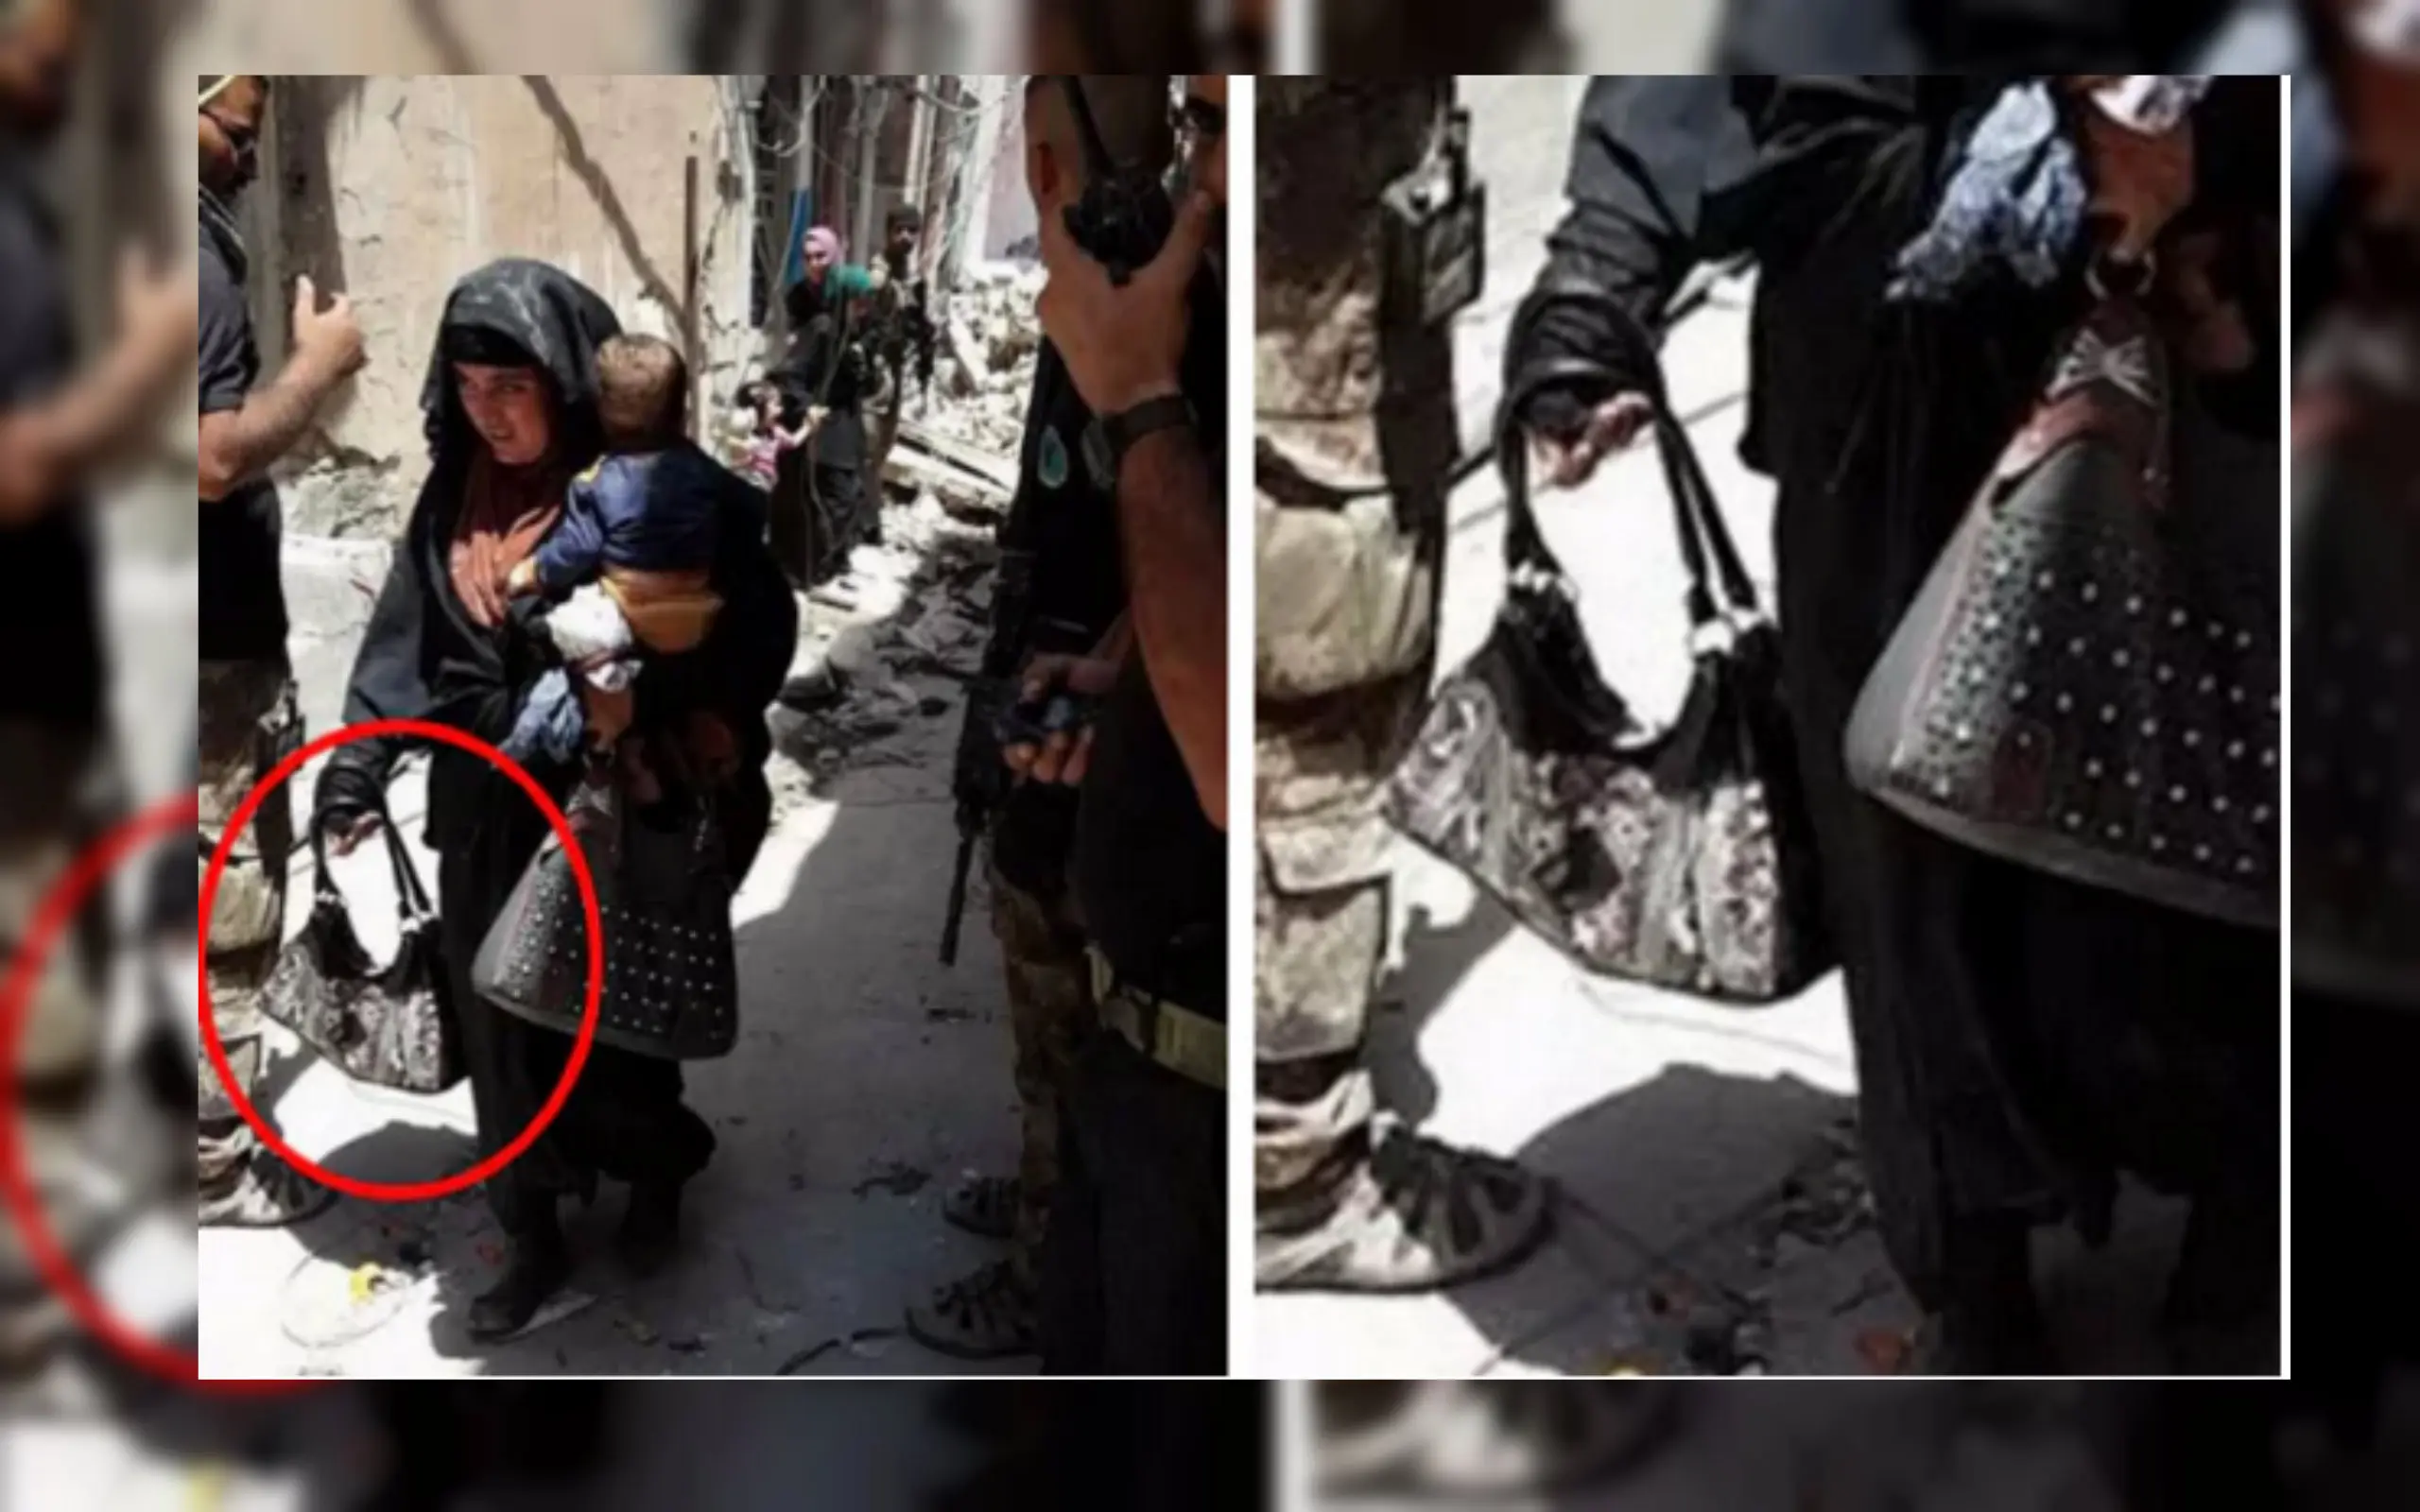 Foto Bomber Perempuan ISIS Bawa Bayi Sebelum Meledakkan Diri (TV al-Mawsleya/Telegraph)